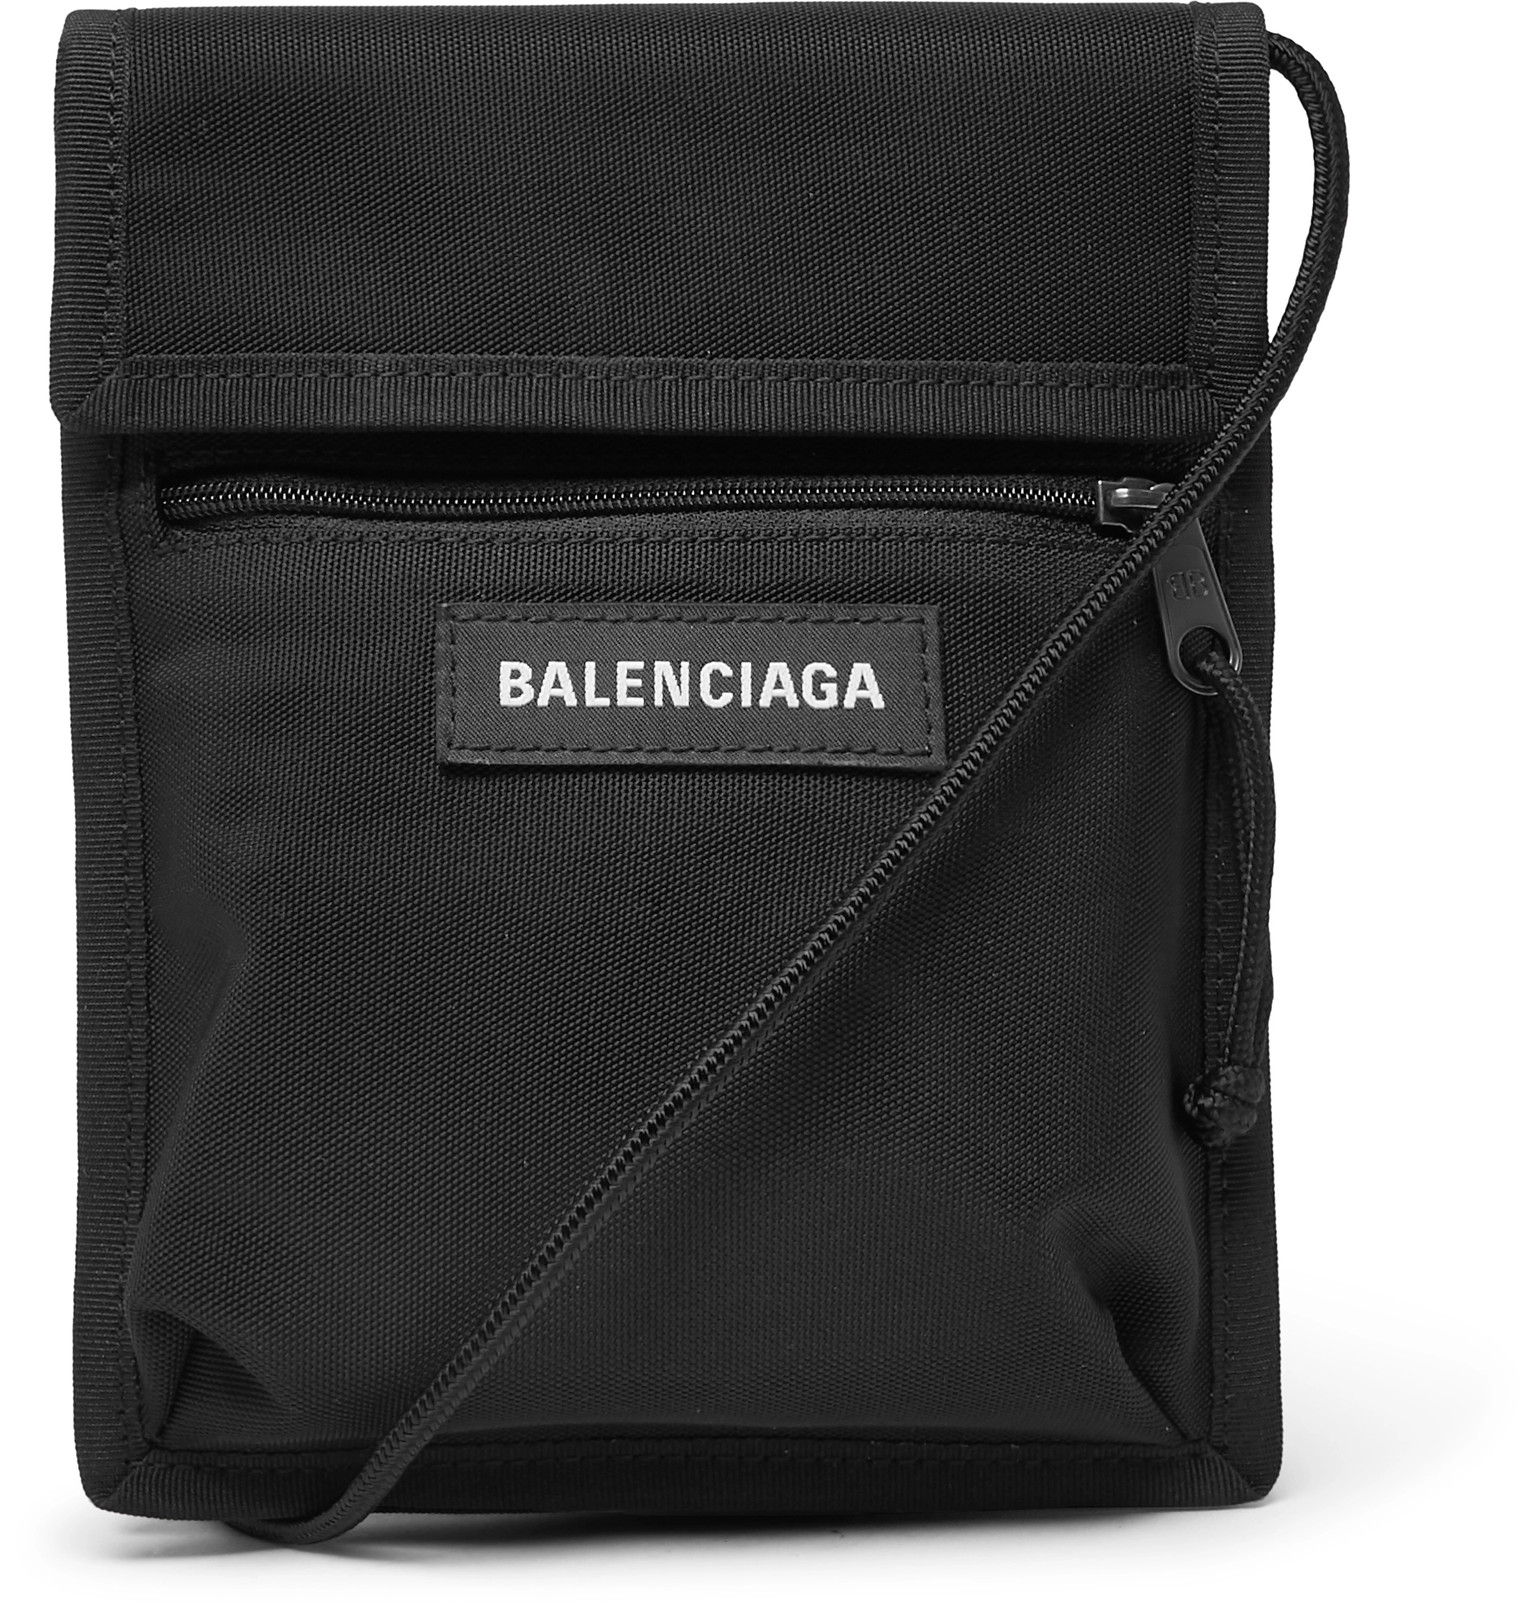 Balenciaga - Explorer Canvas Messenger Bag - Men - Black | The Fashionisto